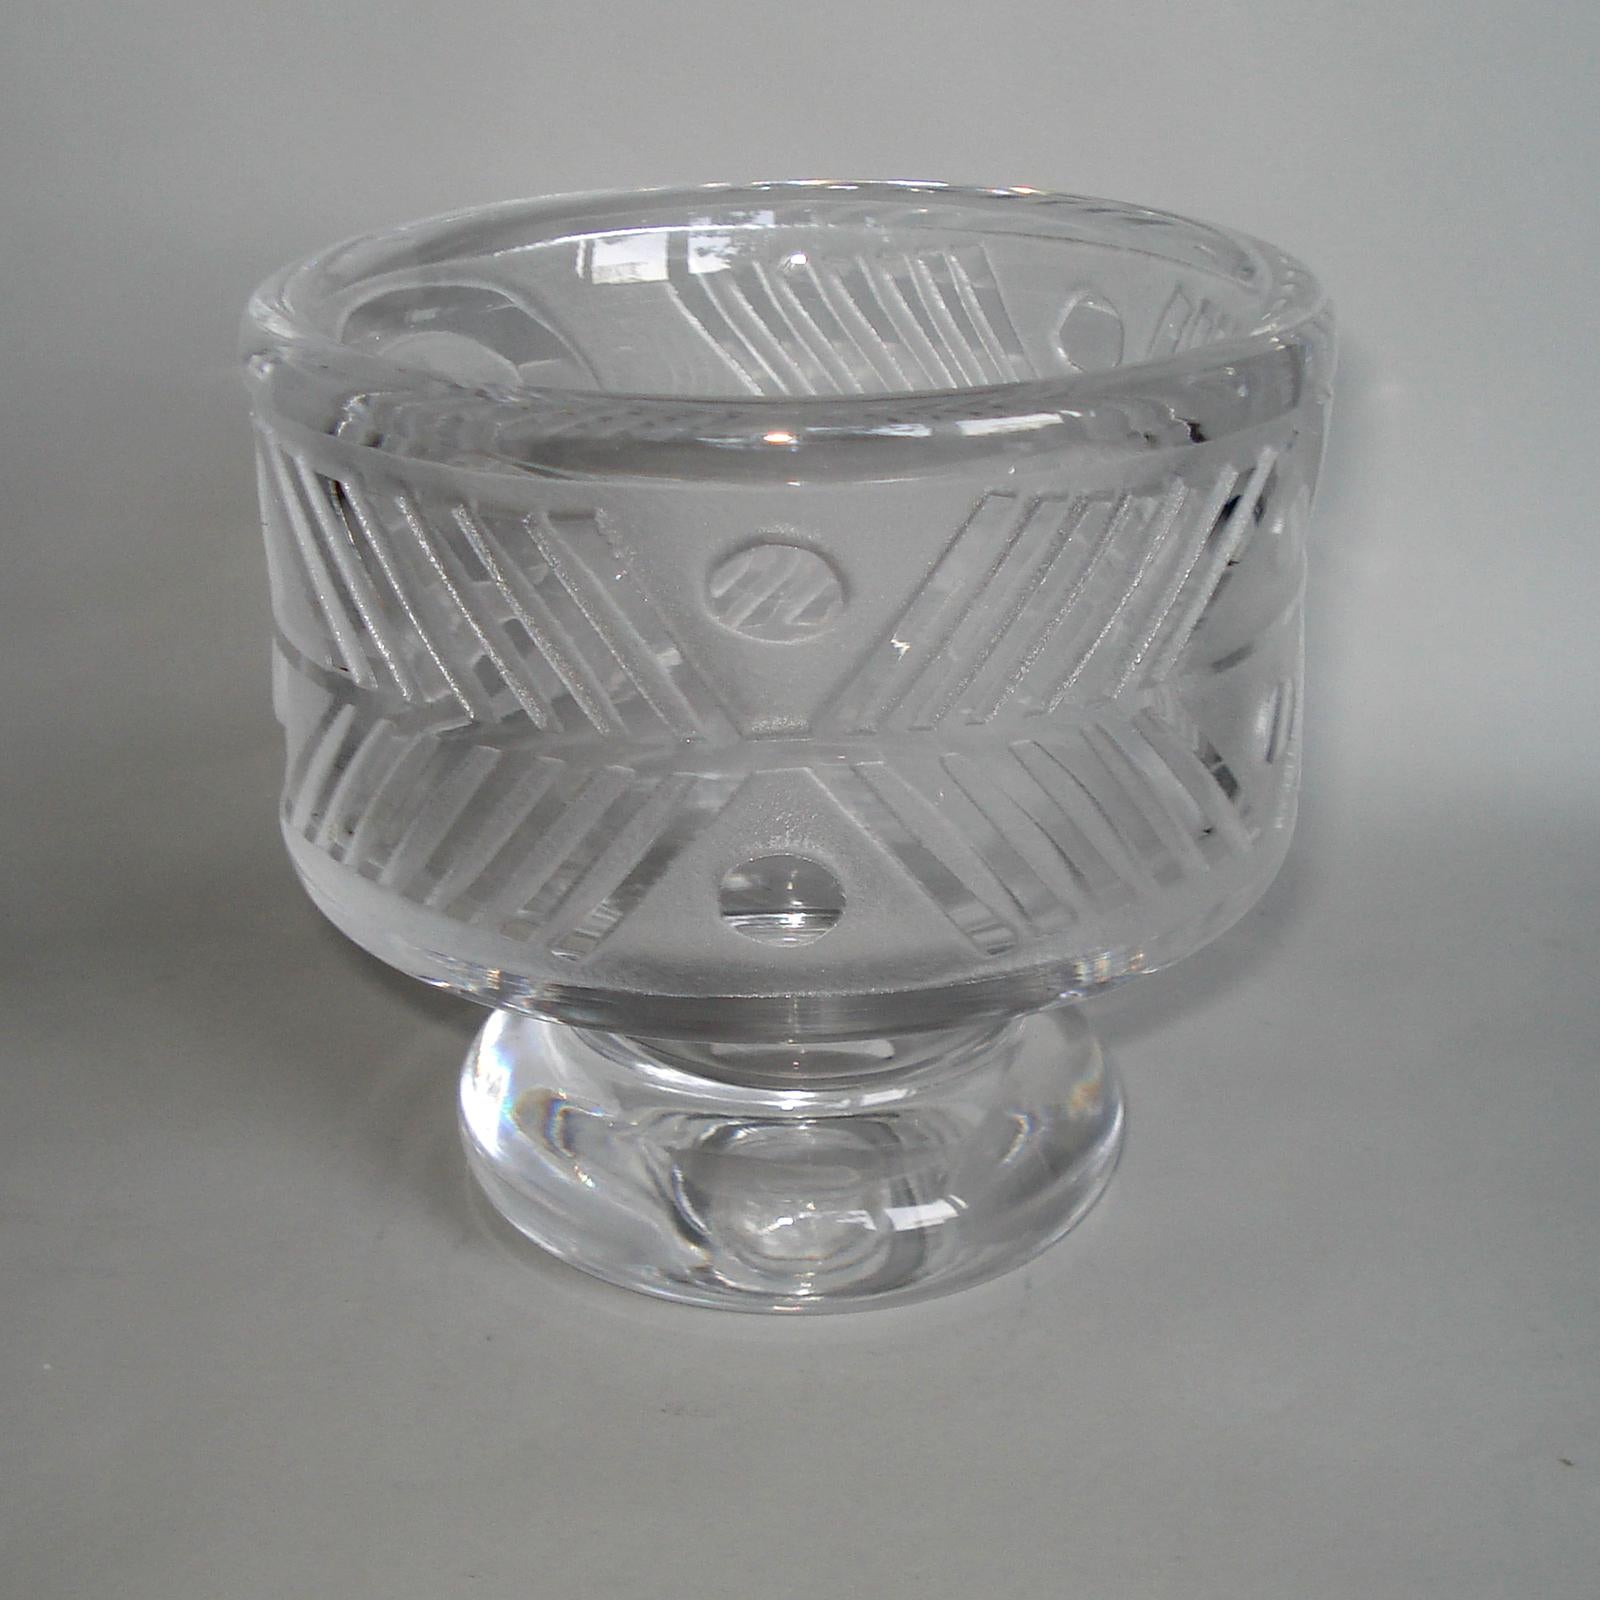 Mid-20th Century Mid-Century Modern Scandinavian Glass Bowl by Bertil Vallien for Boda Afors For Sale